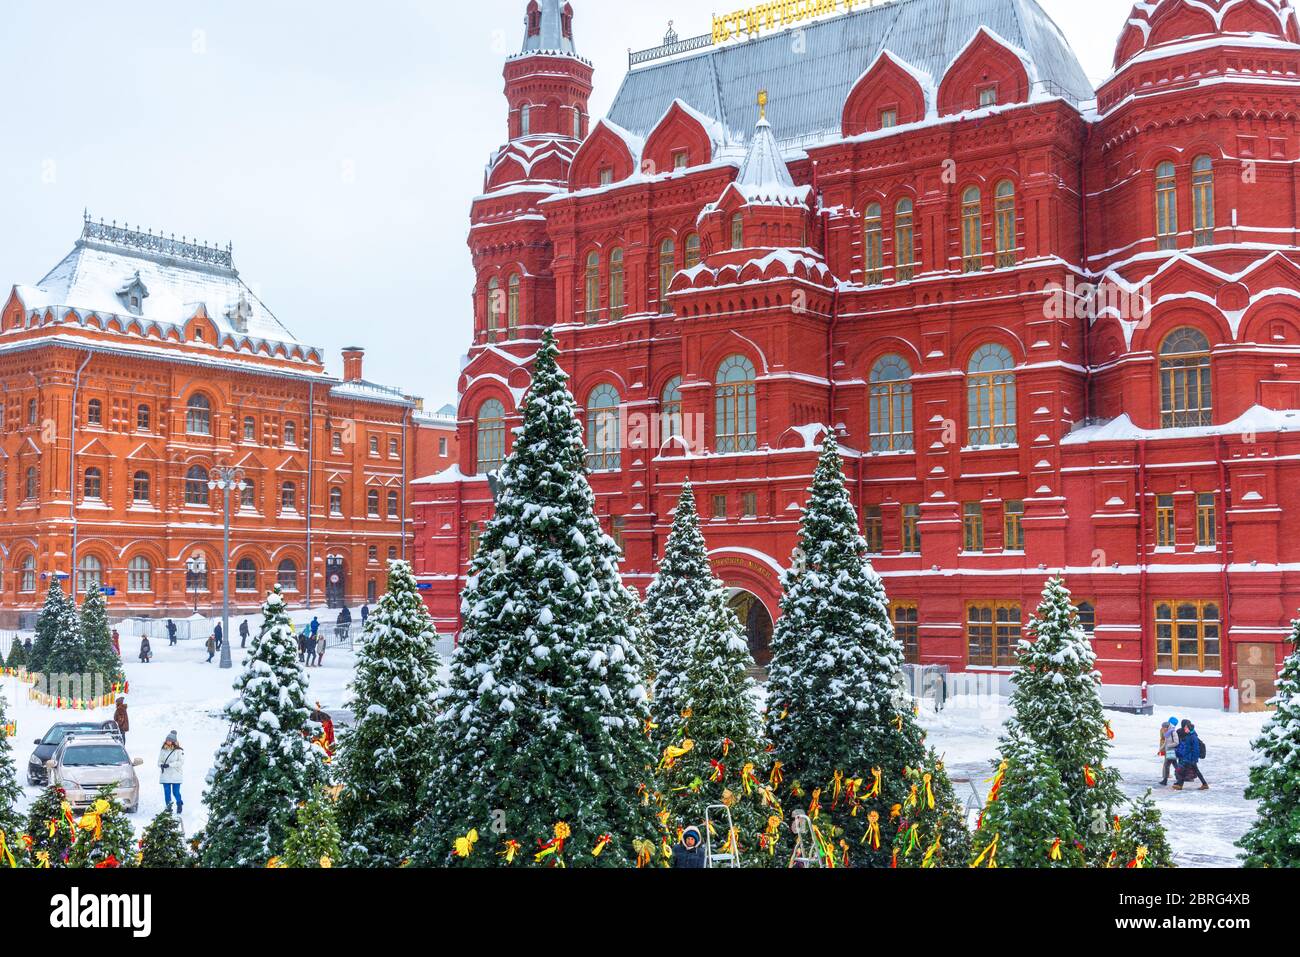 Moscú, Rusia - 5 de febrero de 2018: Centro nevado de Moscú en invierno. Árboles de Navidad con vistas al Museo Histórico Estatal durante la Nevada. Un arco viejo y agradable Foto de stock